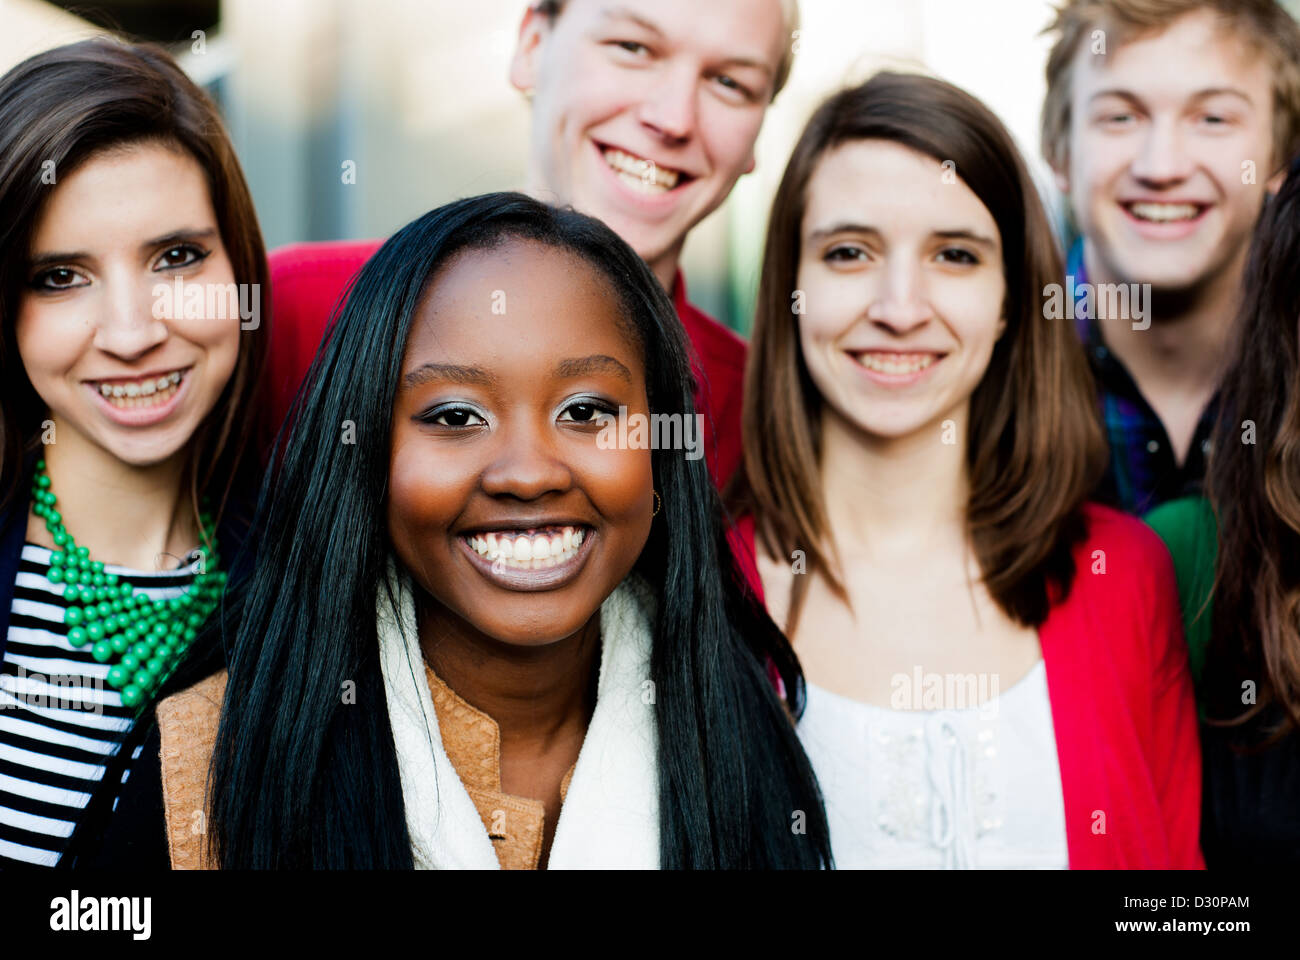 Groupe d'étudiants à l'extérieur divers smiling together Banque D'Images